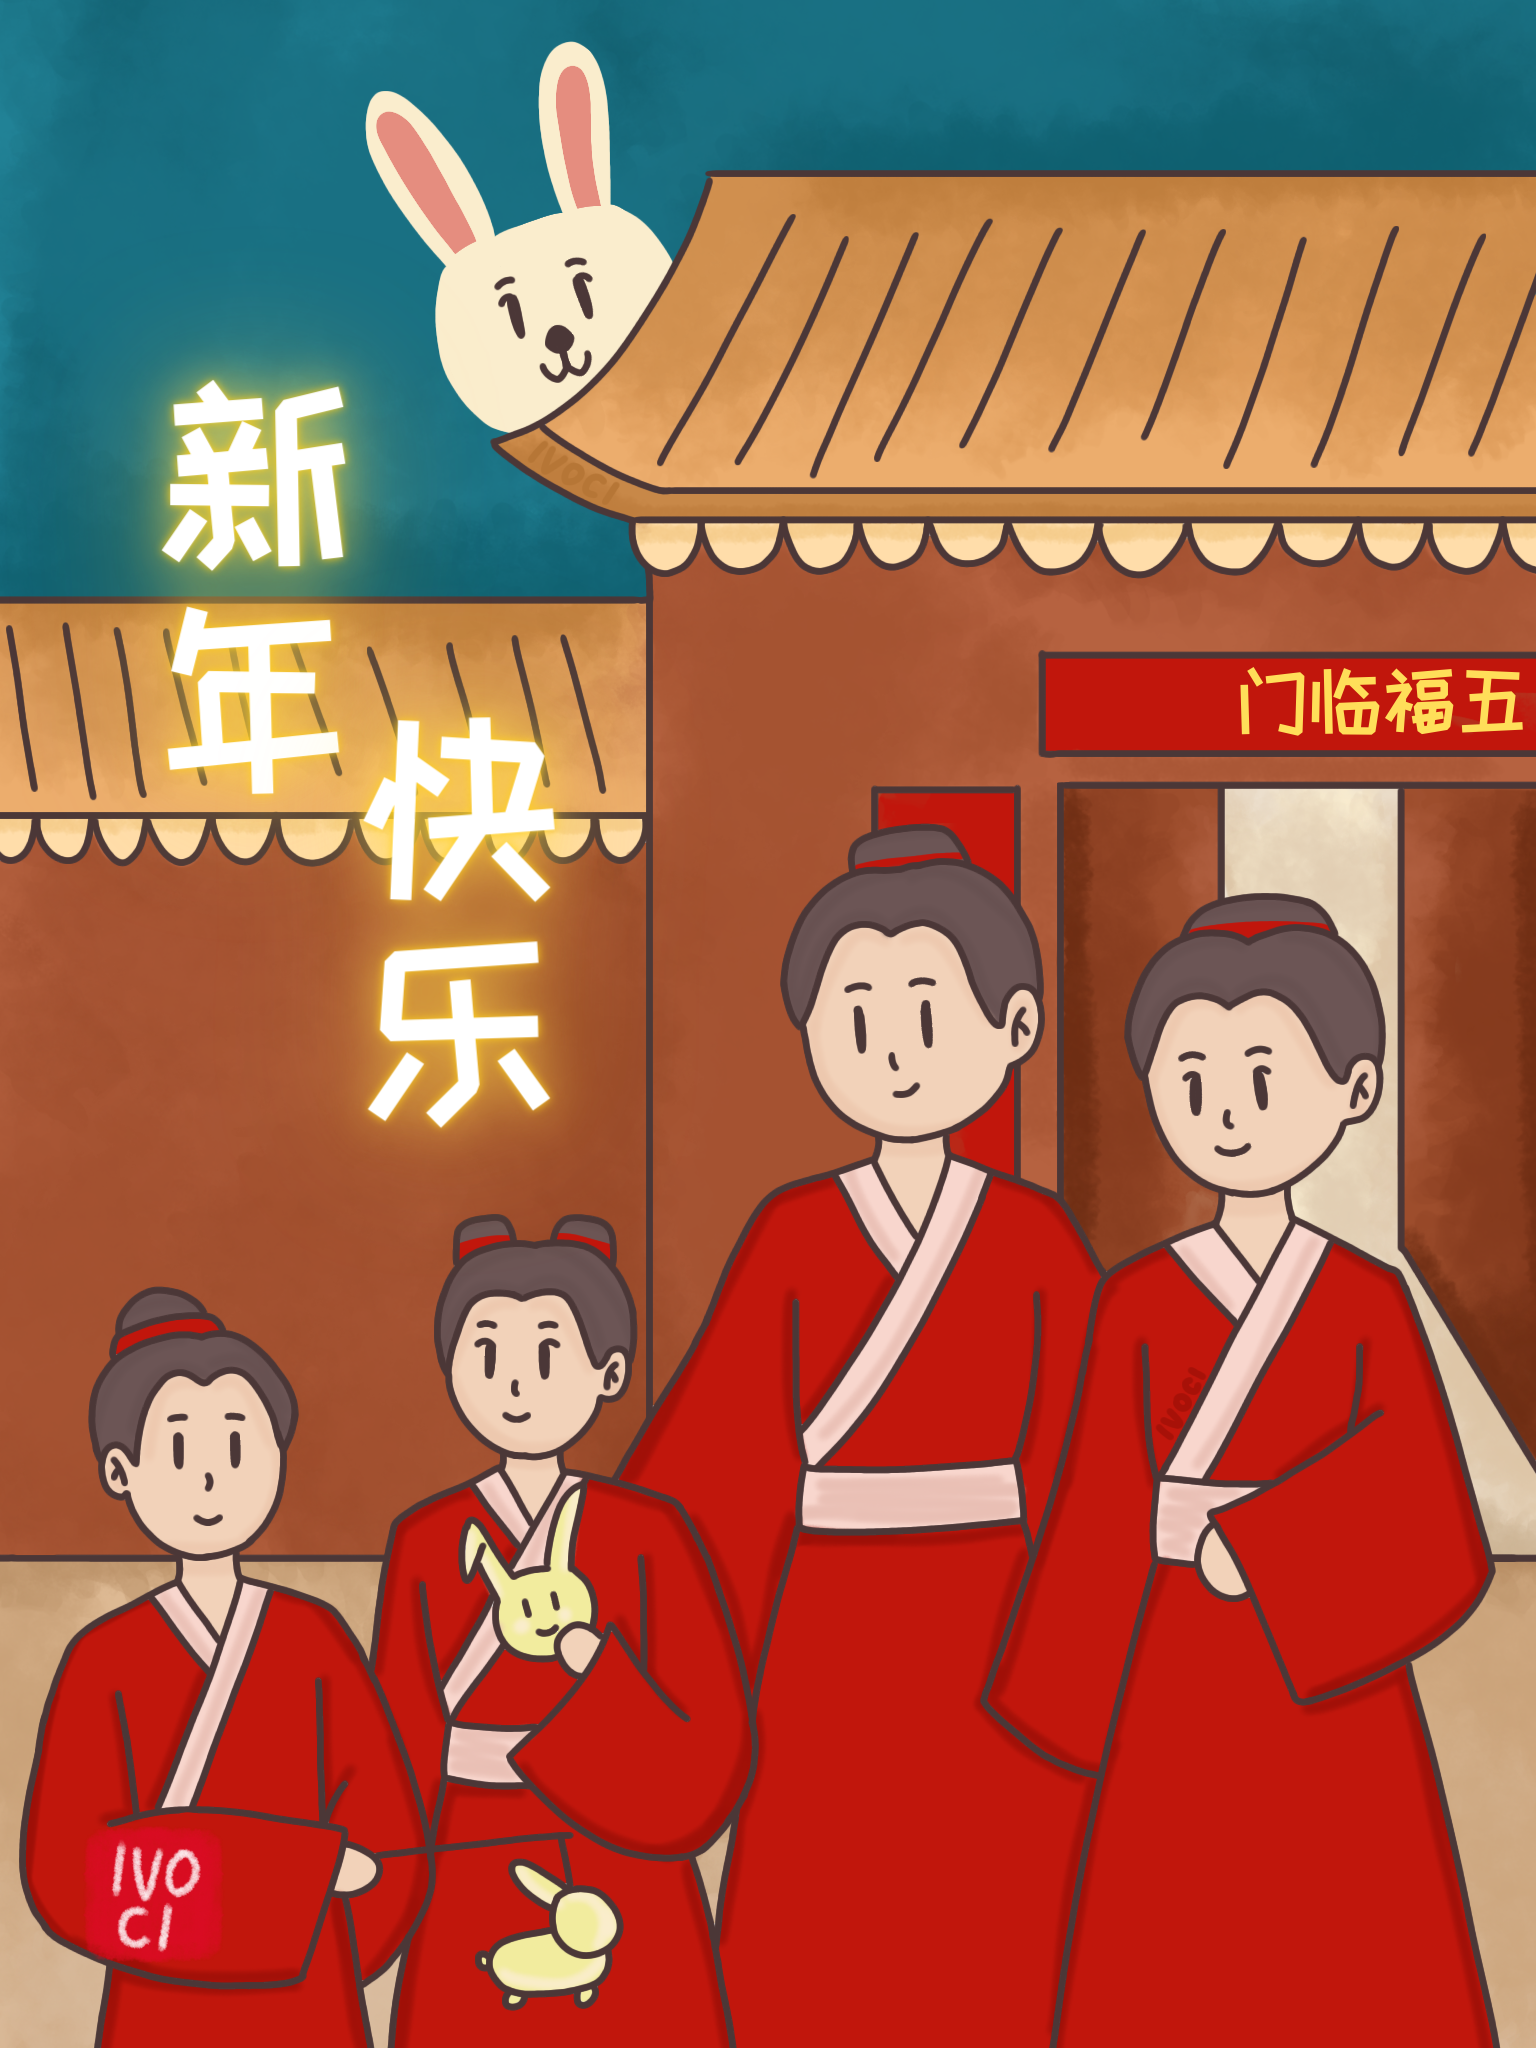 ivoci - Happy Chinese New Year 2574 - 1